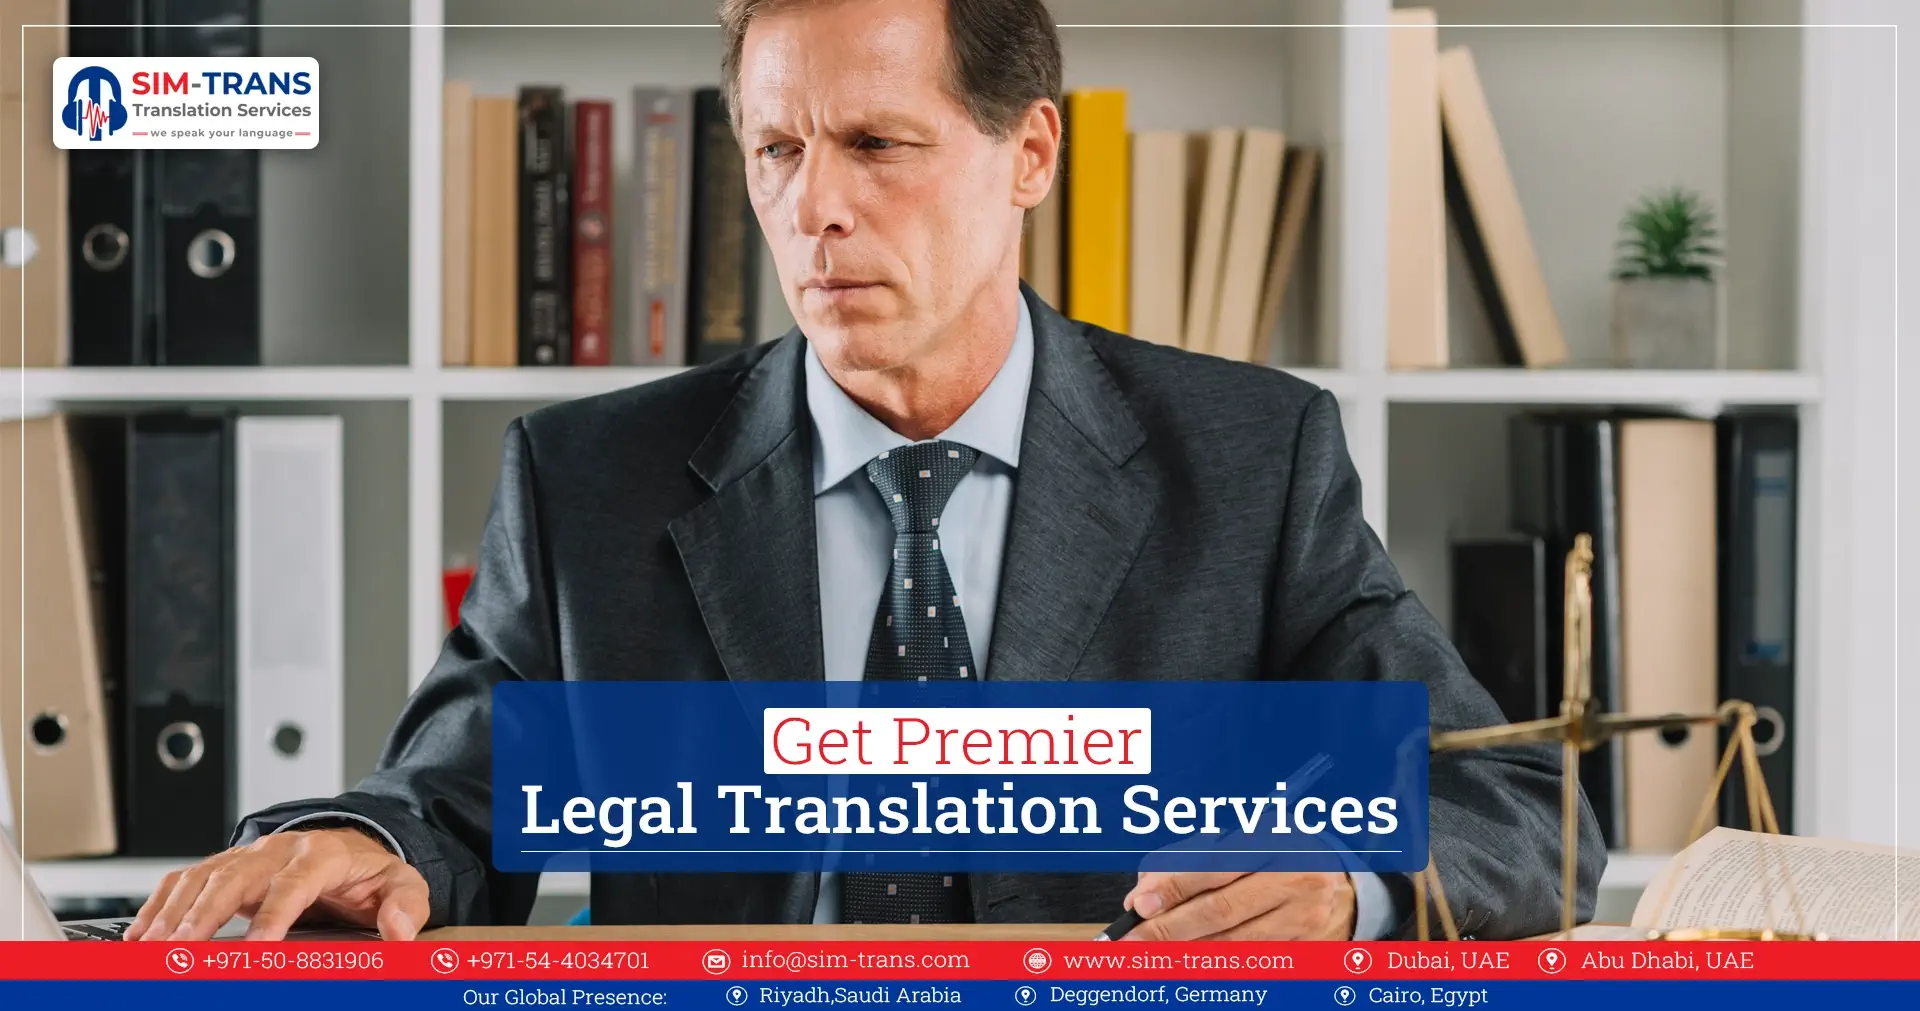 Get Premier Legal Translation Services